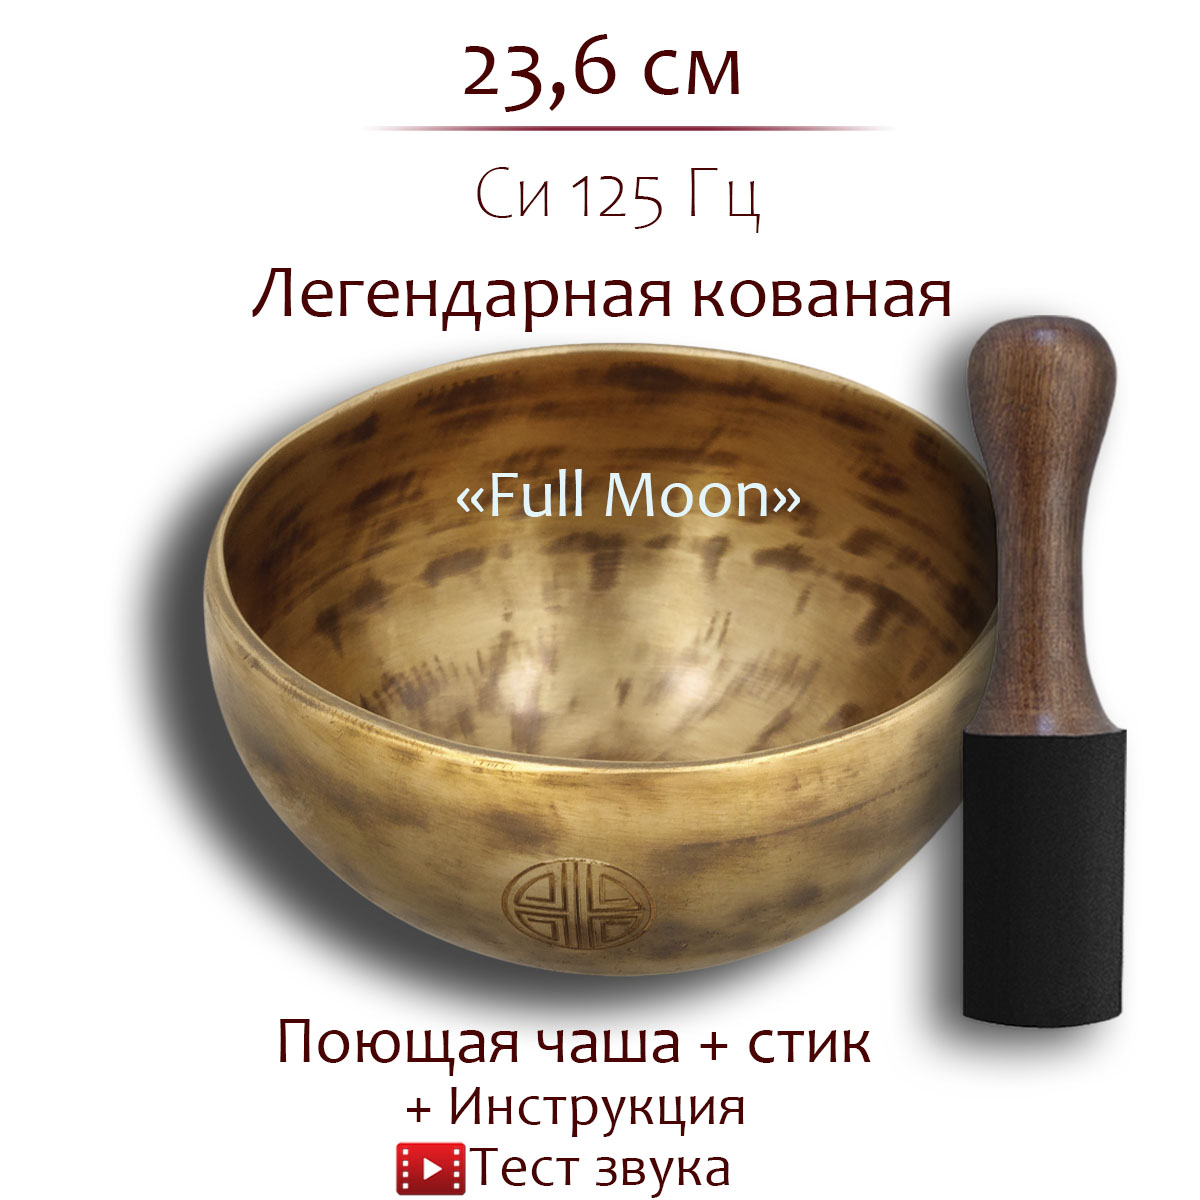 Кованая поющая чаша с изображением Full Moon 23,6 см, Си, 125 Гц, FSBPL-03